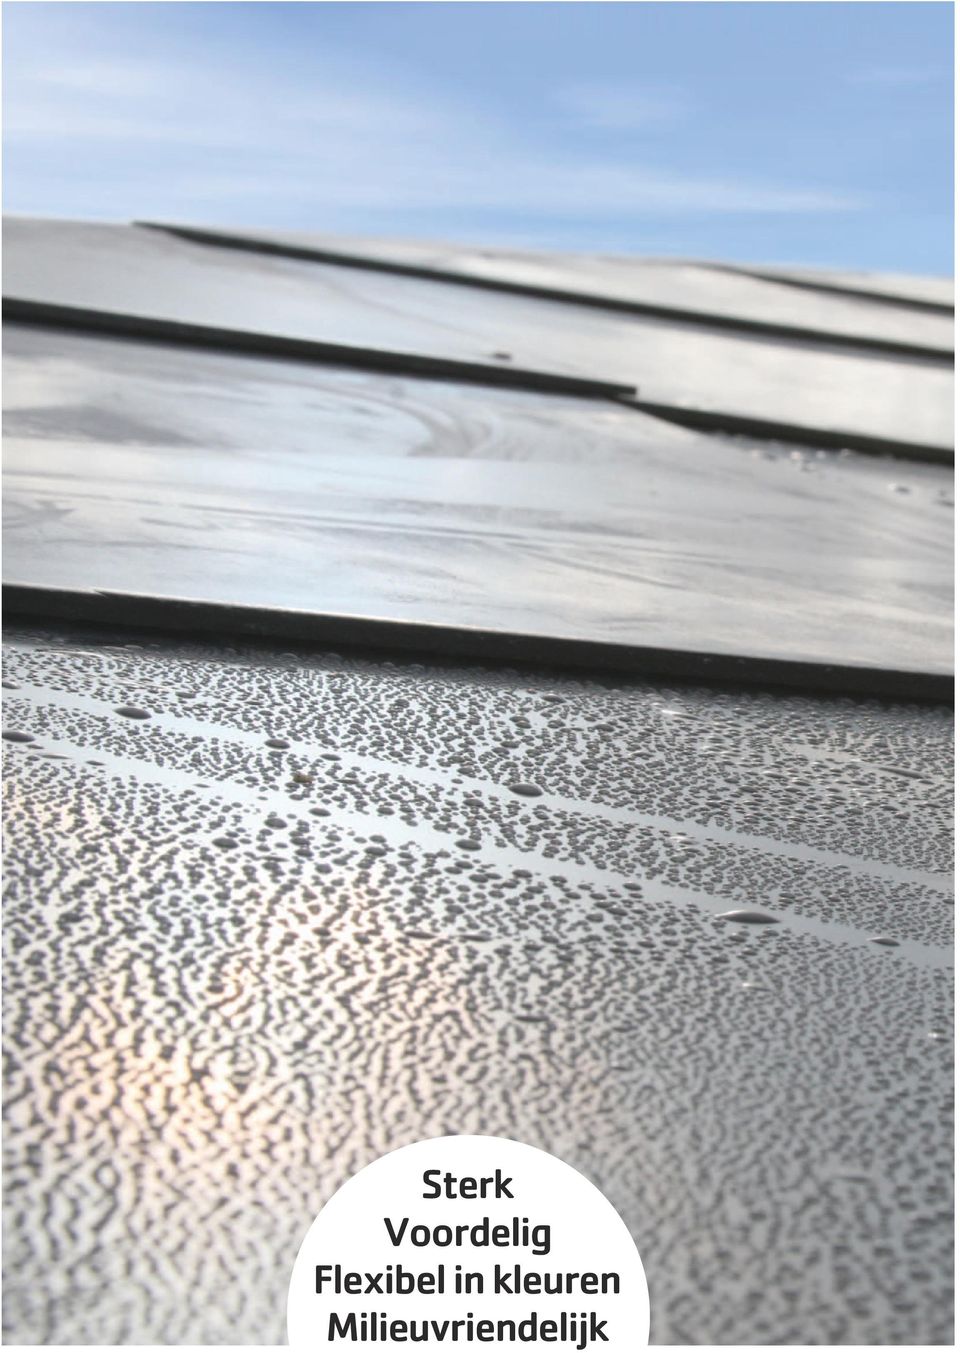 steni colour wordt vervaardigd met een oppervlak van 100 % zuiver acryl. Dit wordt verhard met elektronen, zonder gebruik van oplosmiddelen of andere verhardingsmiddelen.